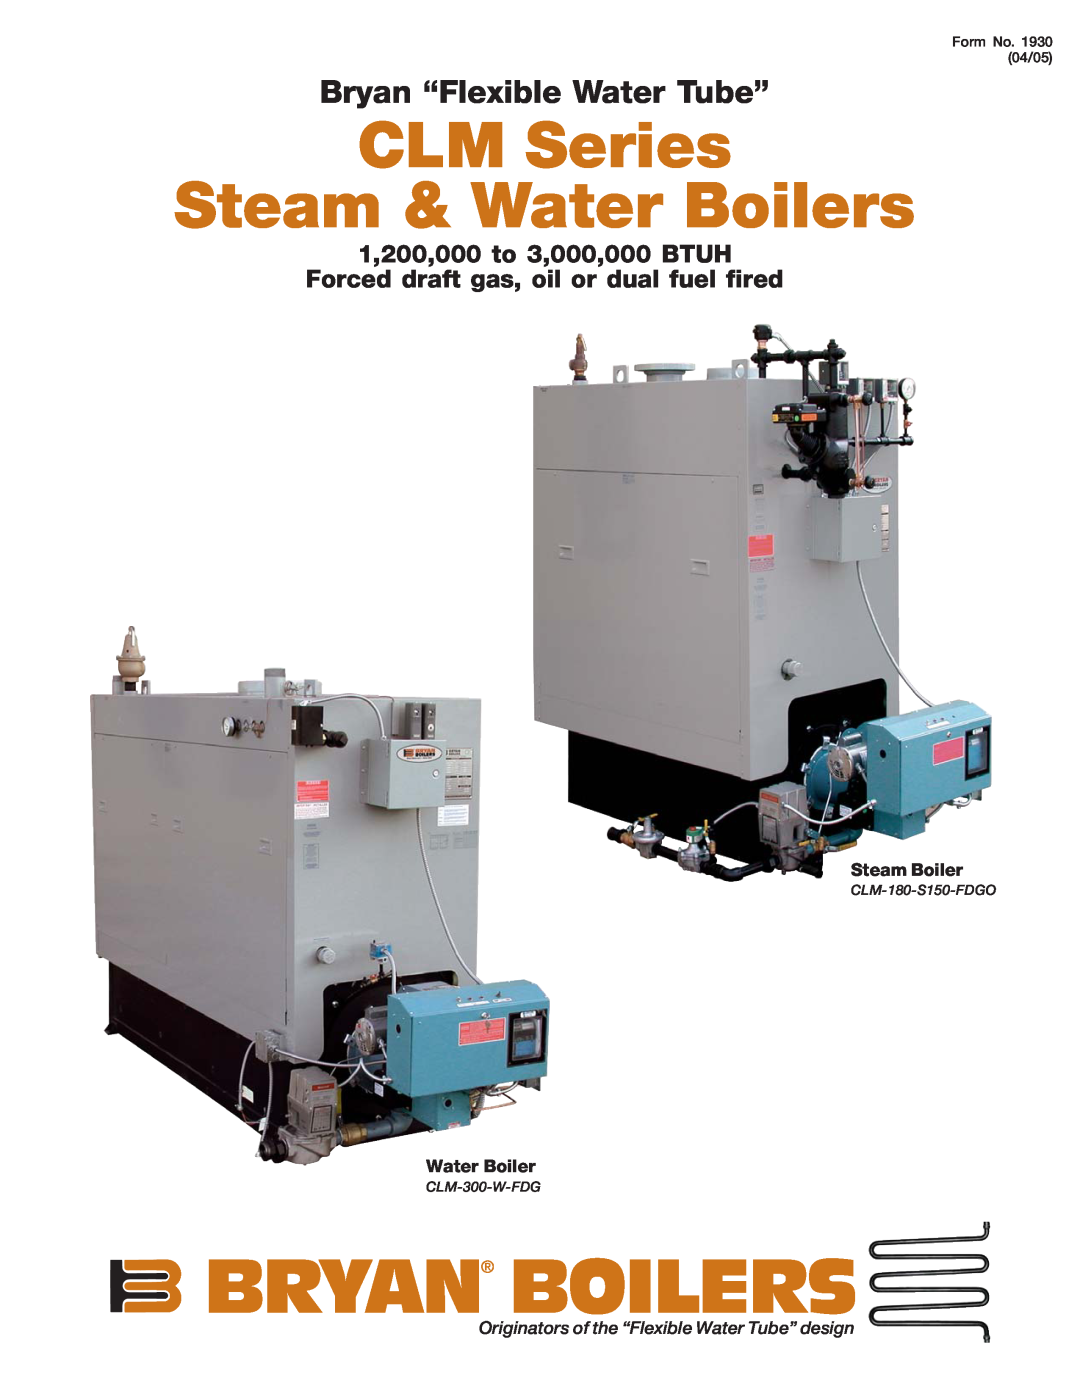 Bryan Boilers manual Bryan Boilers, CLM Series Steam & Water Boilers, Bryan “Flexible Water Tube”, CLM-180-S150-FDGO 